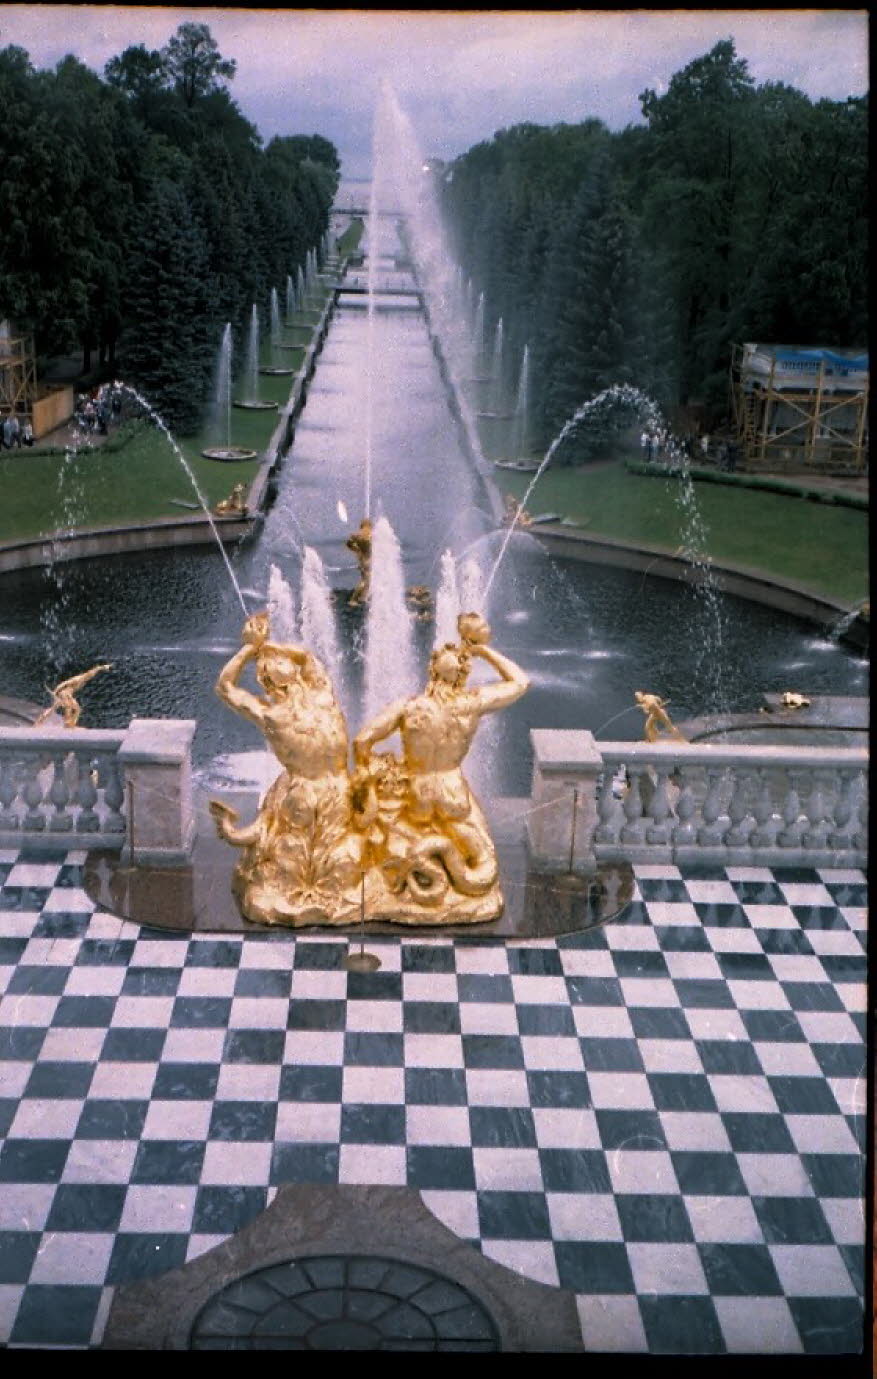 Sommerpalast von Peter I. und der Sommergarten: Der Sommerpalast von Peter I. wurde 1714 fertig gestellt und gilt als der erste Steinbau von St. Petersburg. Dies war auch das erste mit einem Kanalisationssystem ausgestattete Haus in der neuen Hauptstadt v